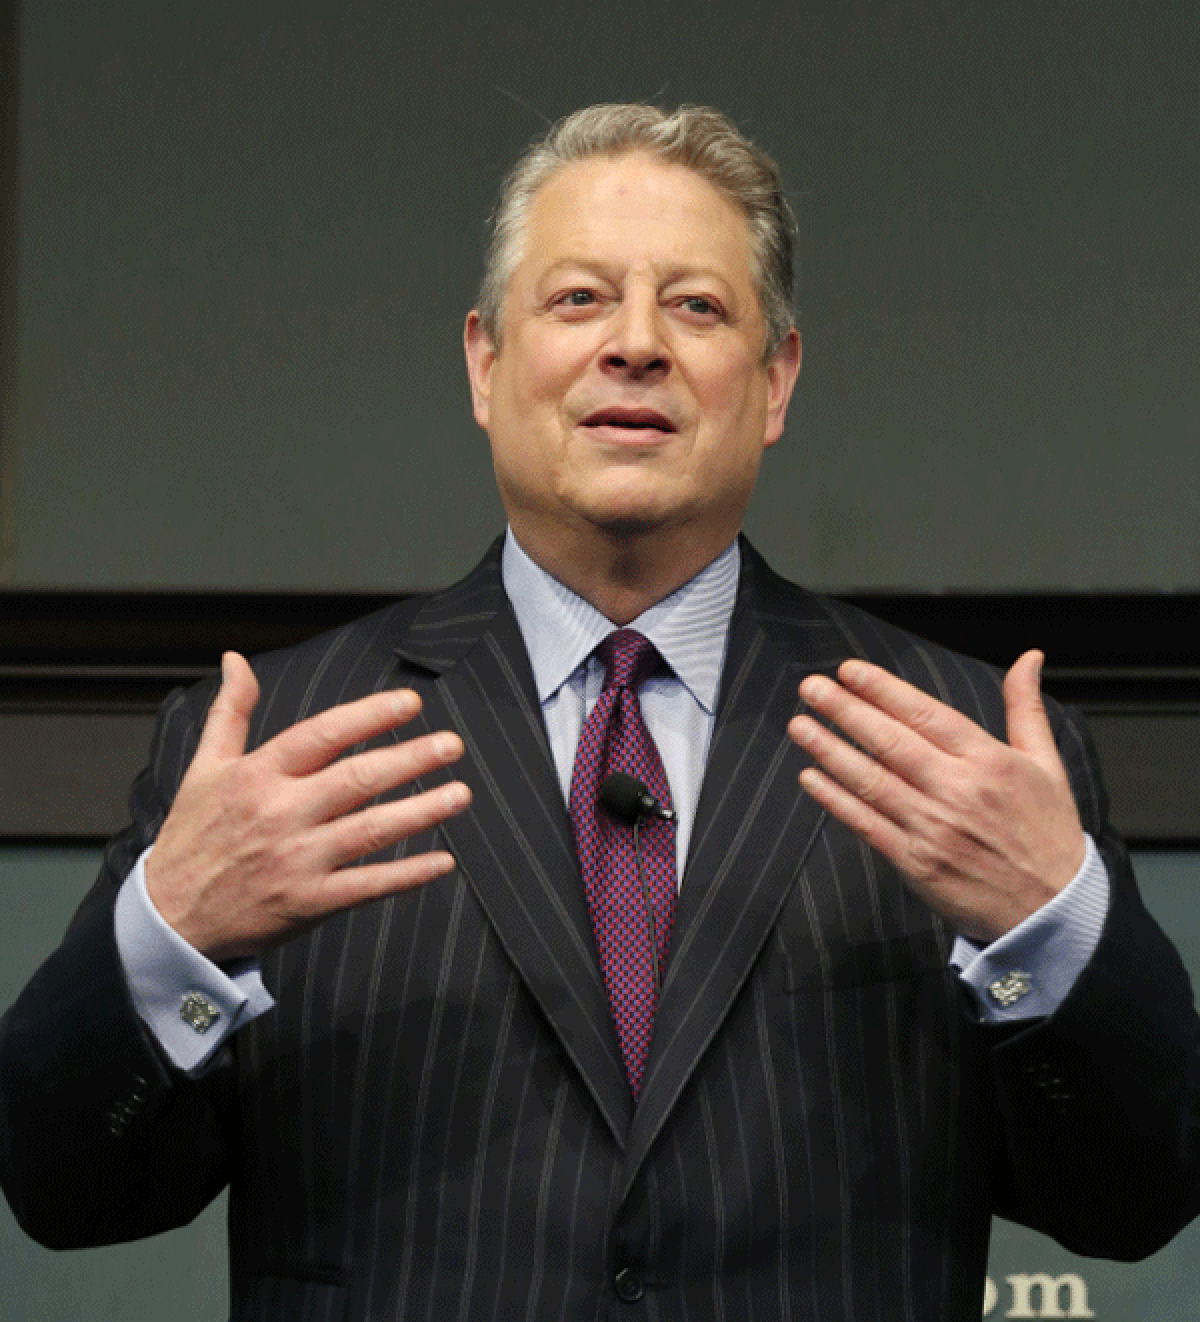 Al Gore promotes his new book, "The Future," at Barnes & Noble Union Square in New York City.